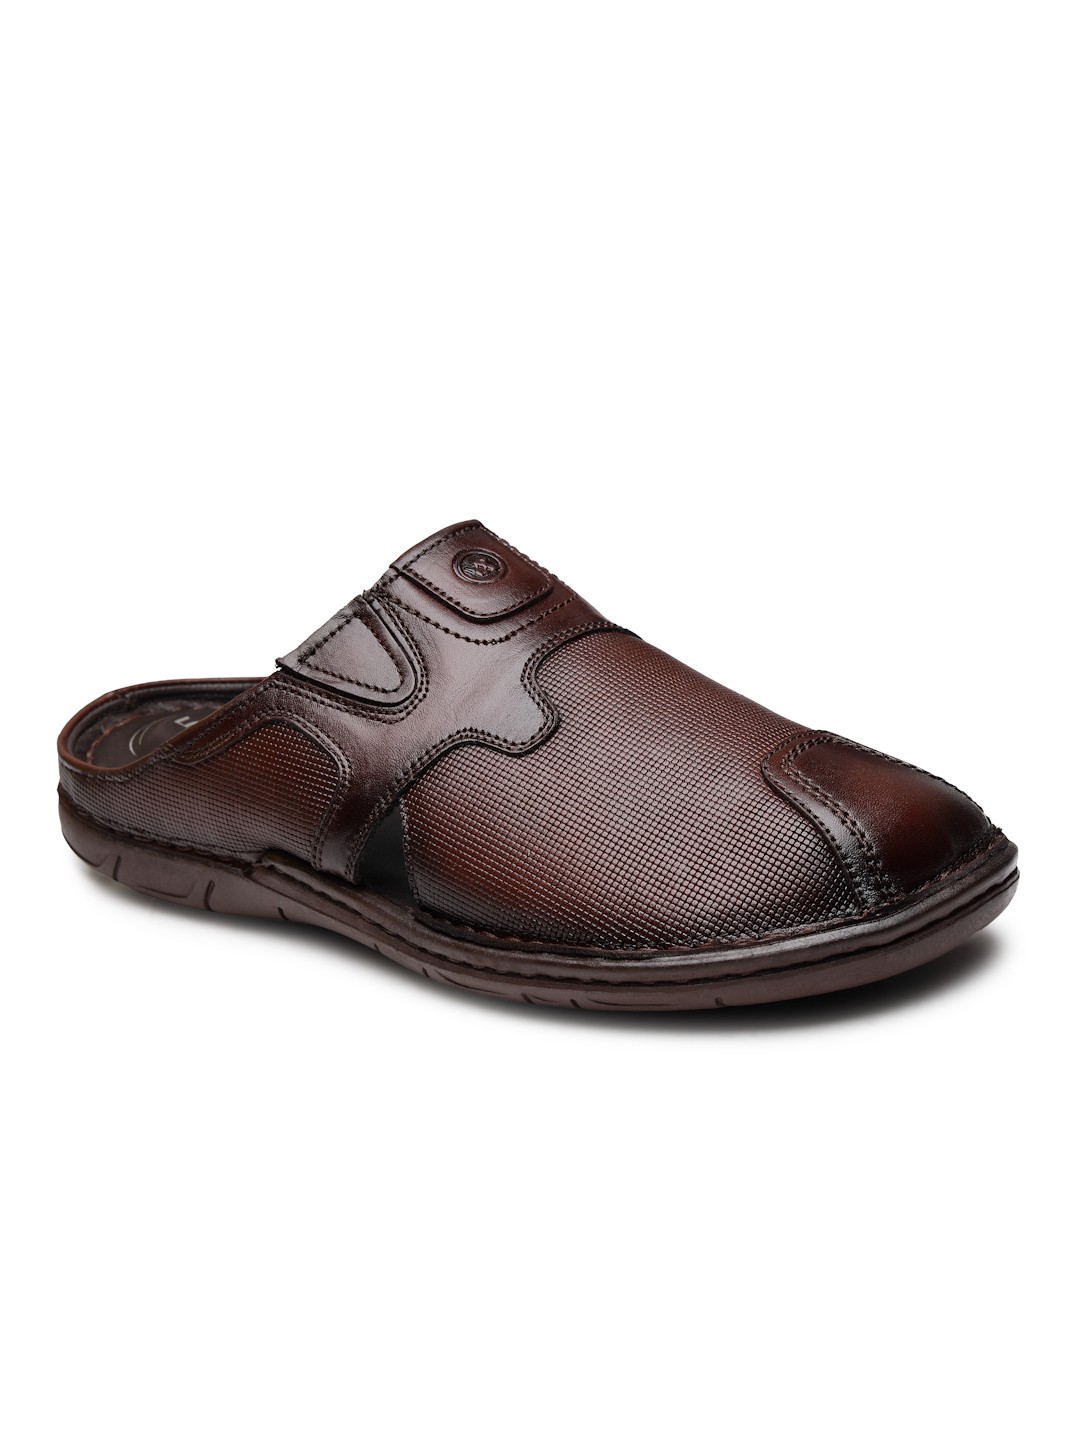 Buy Von Wellx Germany Comfort Men's Brown Slippers Arlo Online in Mumbai